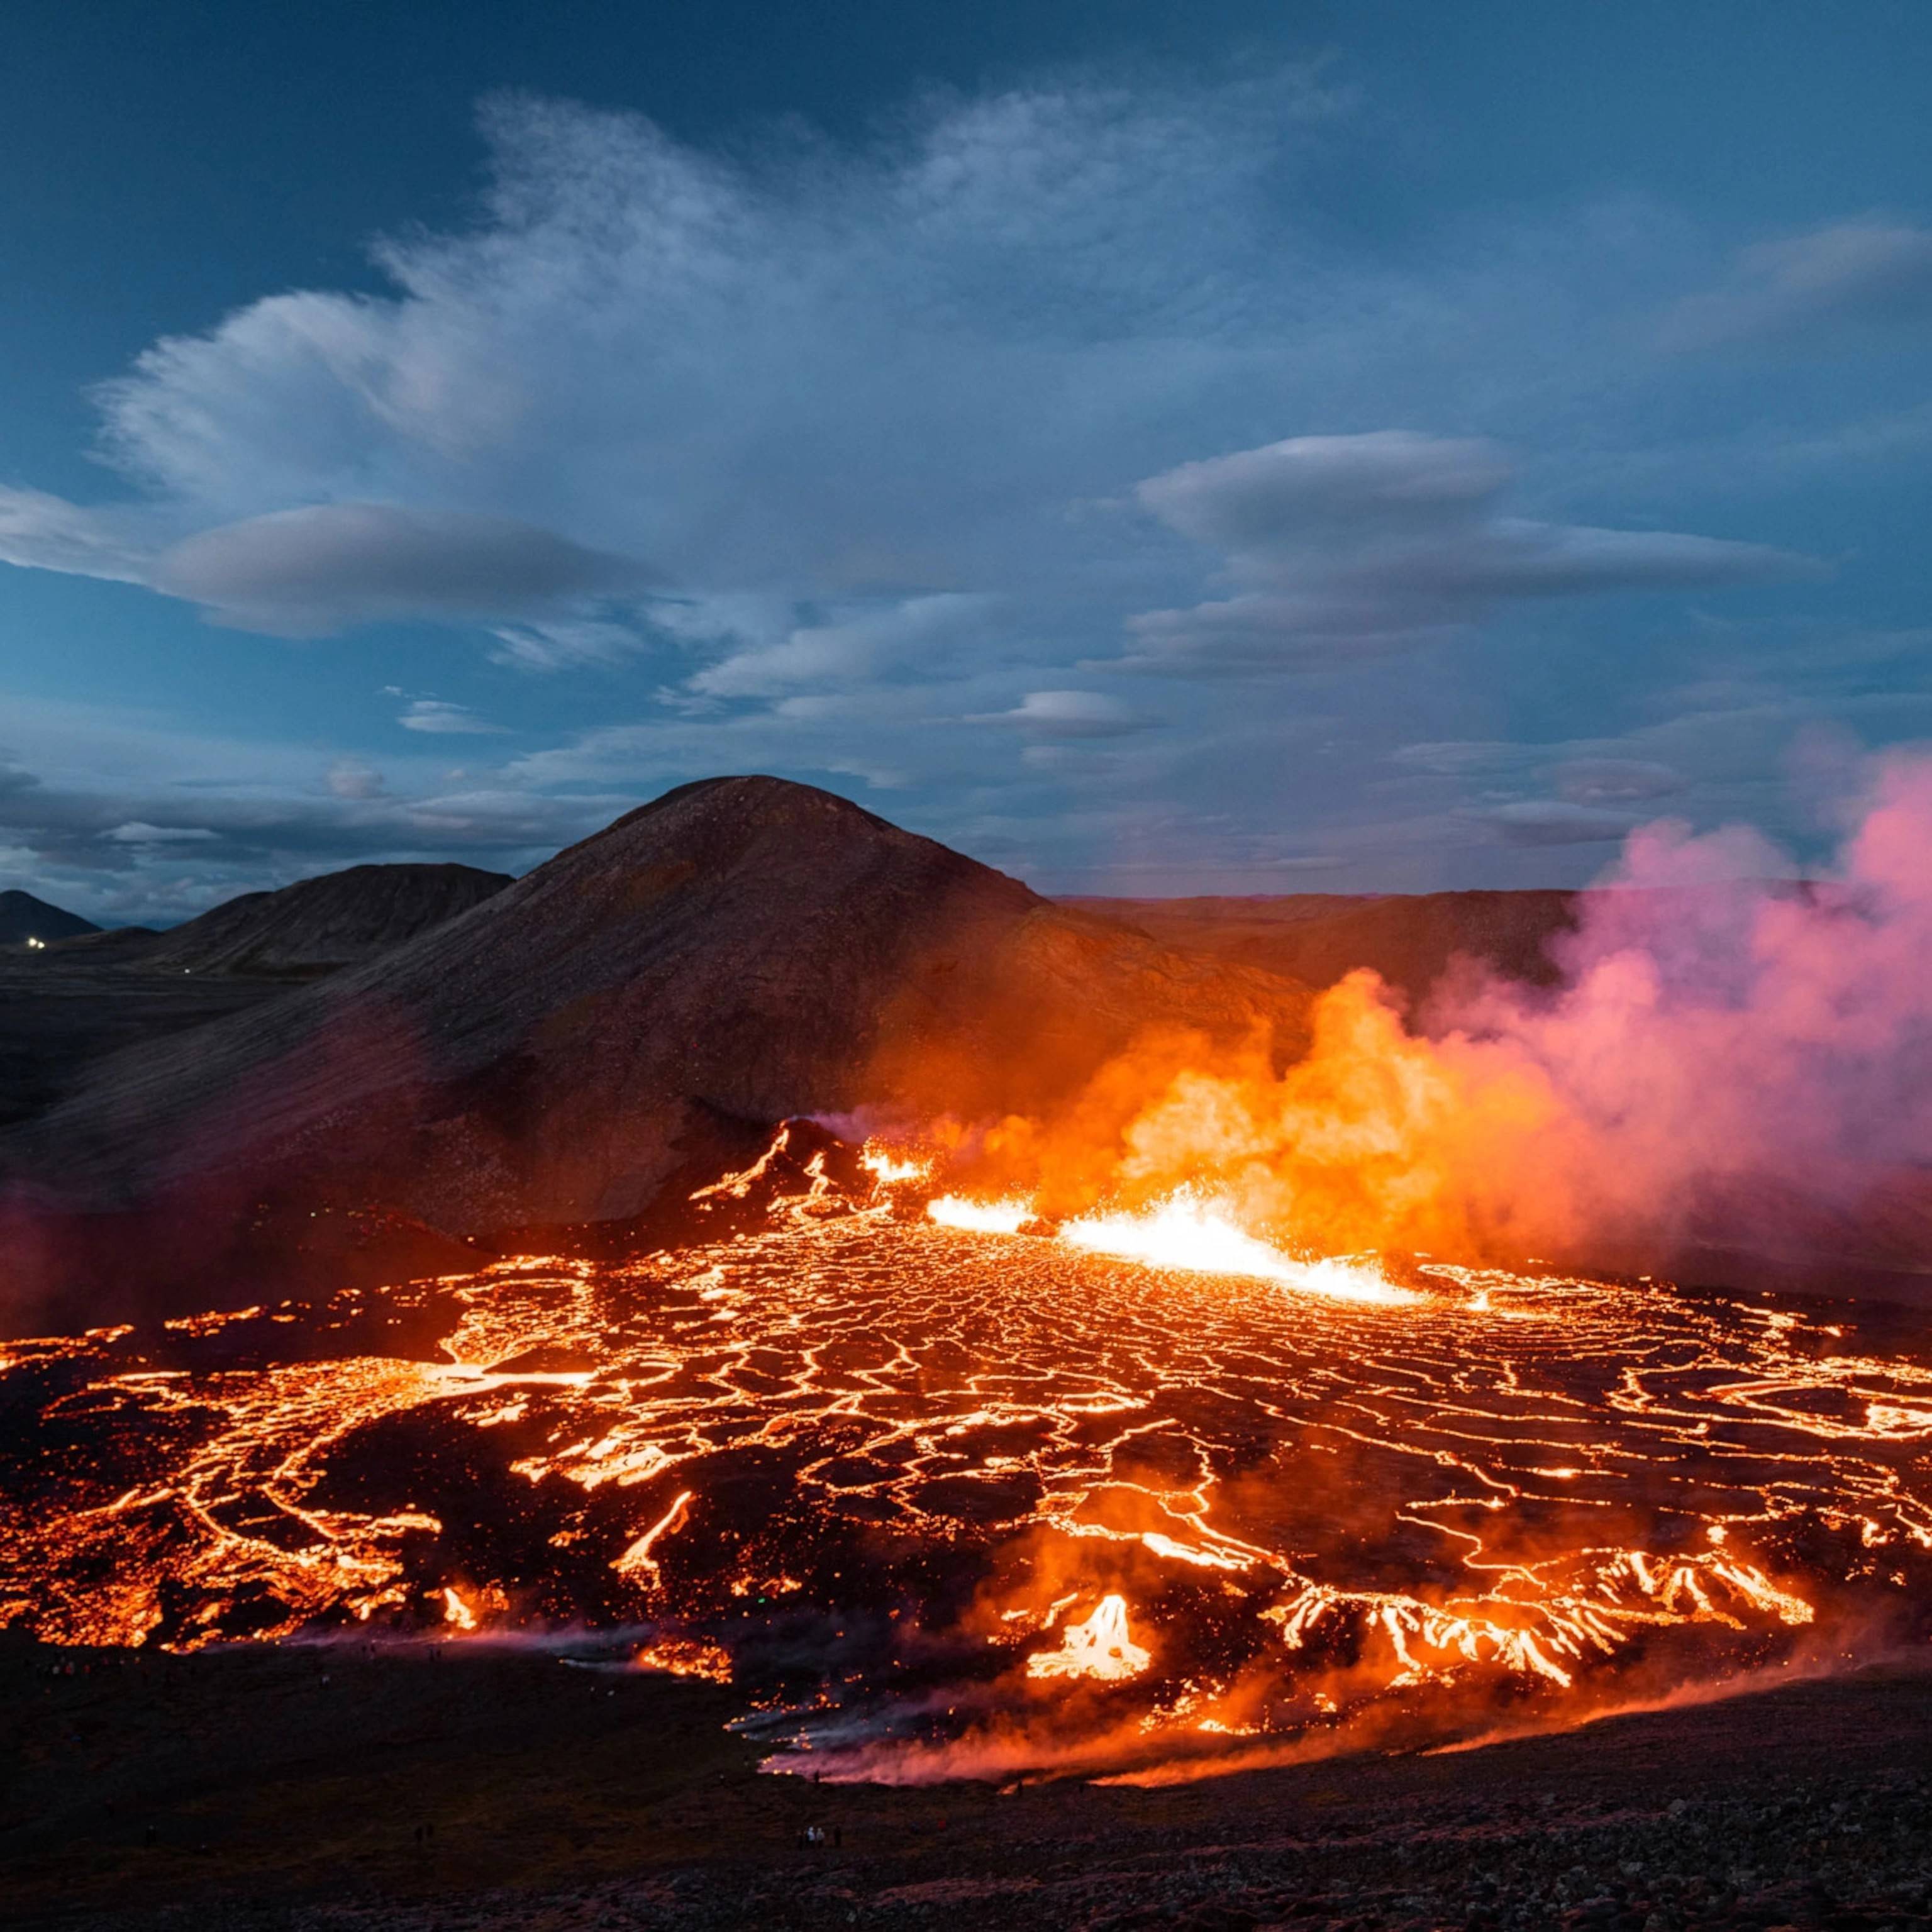 摄影图片欣赏:史上最震撼的火山喷发图景(下)